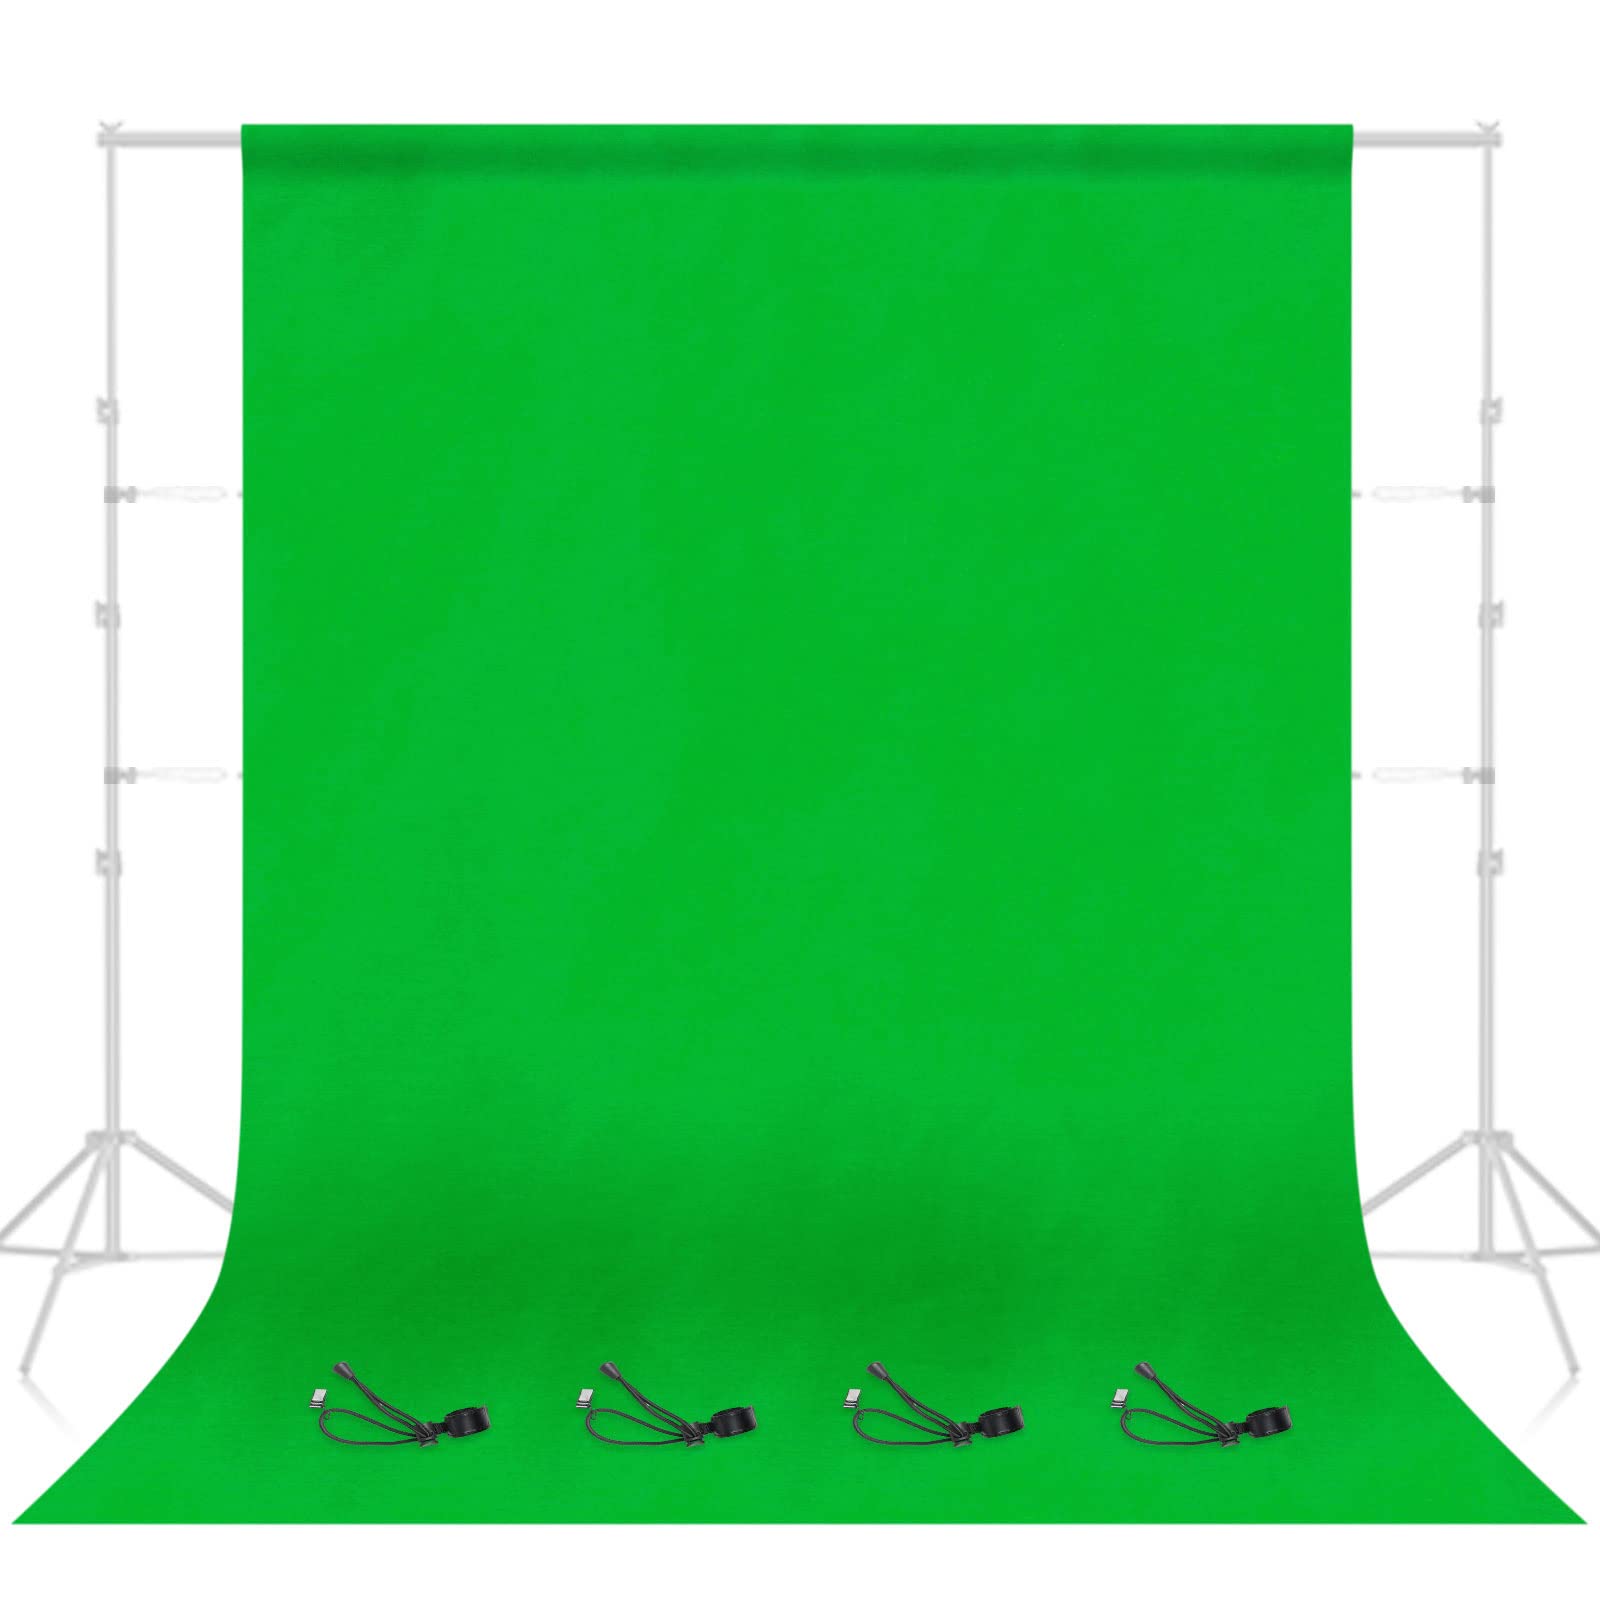 EMART Green Screen 1,8 x 2,8m Fotostudio Hintergrund Faltbare Greenscreen Stoff 100% Reiner Musselin Grüne Tuch mit 4 Clips für Produkt Porträt Video Fotografie